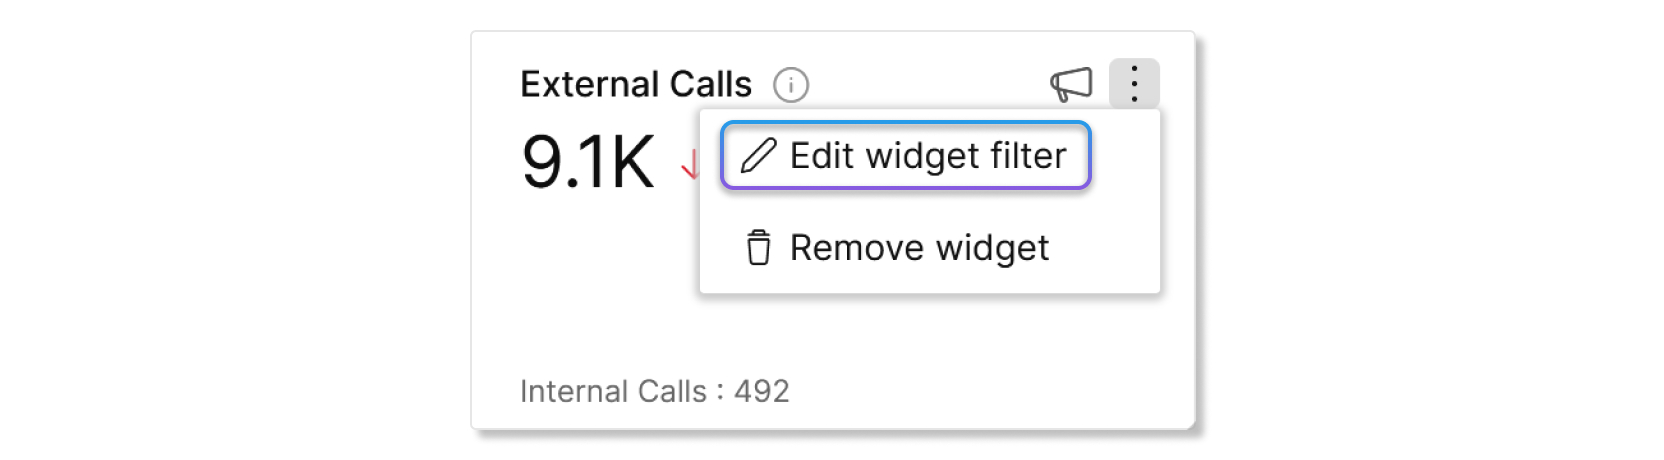 Botão Editar filtro de widget em um gráfico no Control Hub